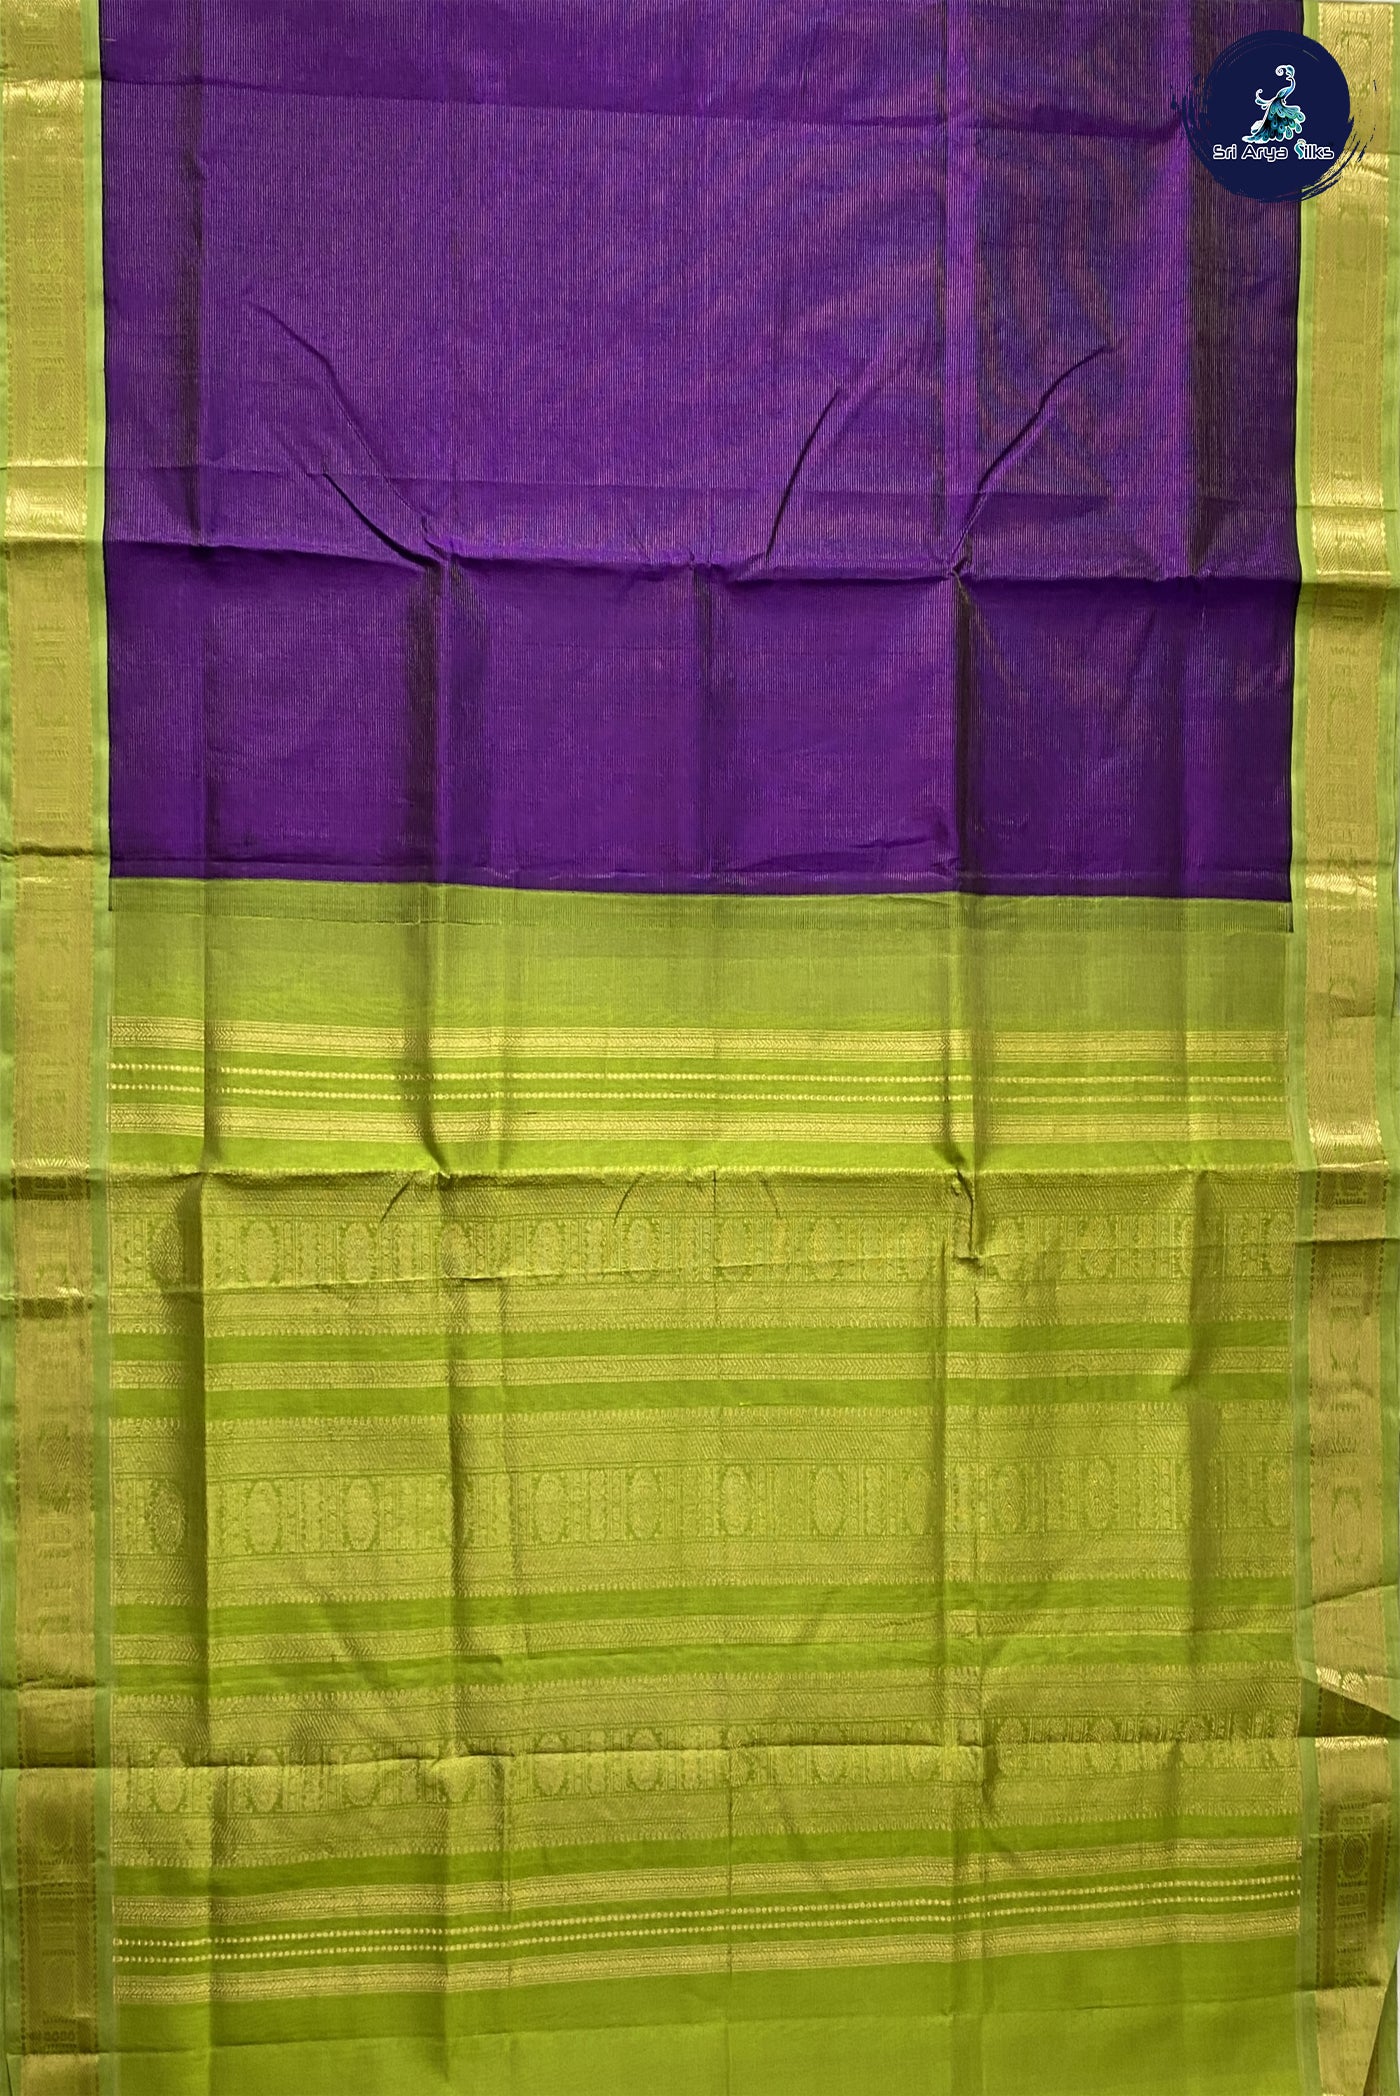 Dark Brinjal Vaira Oosi Silk Cotton With Vaira Oosi Pattern